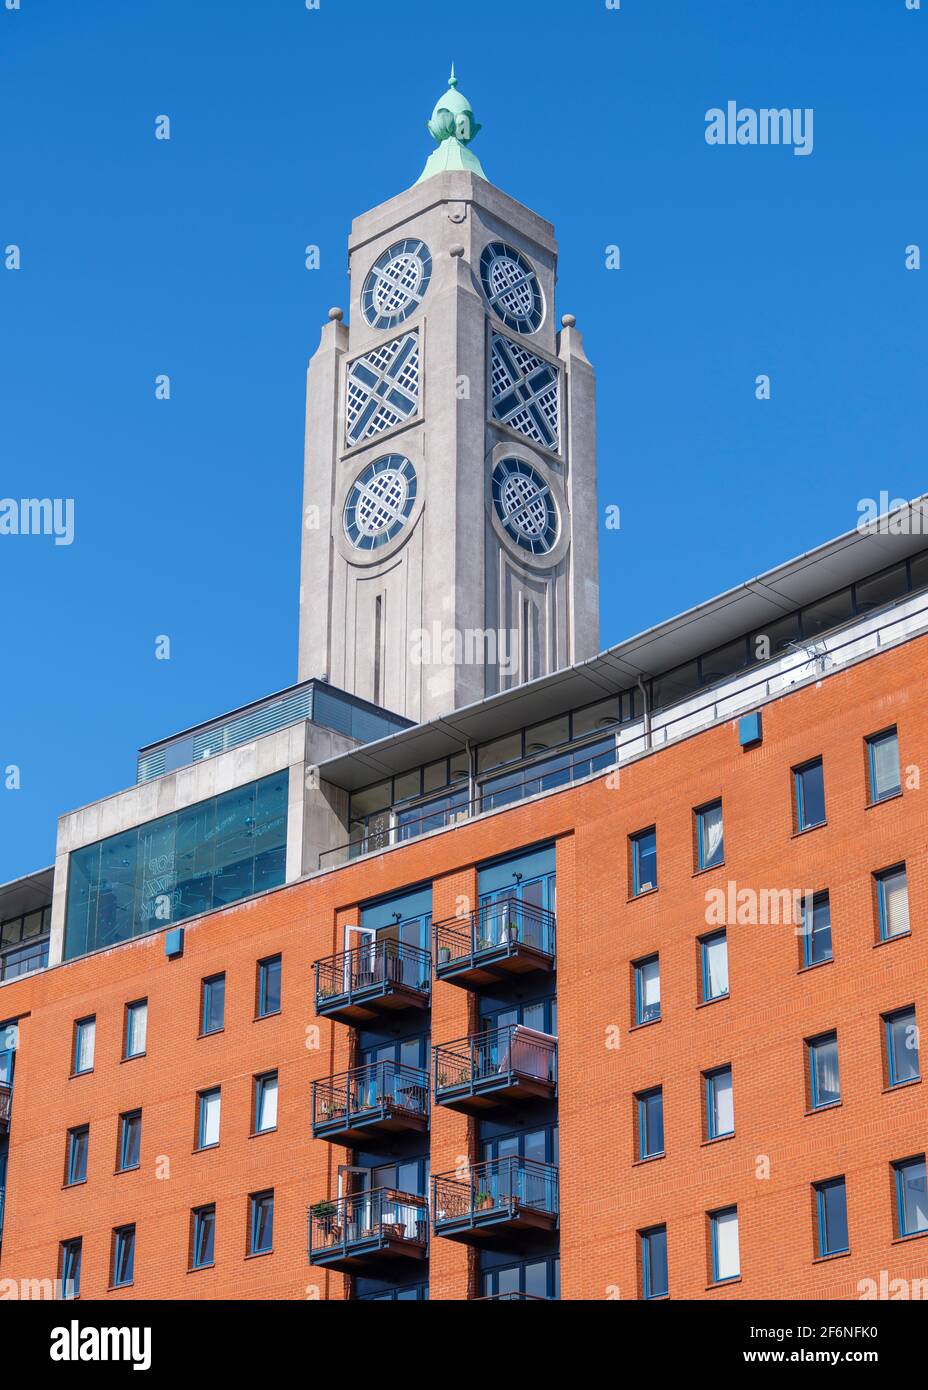 Der OXO-Turm ist ein Art-Deco-Umbau eines ehemaligen Kraftwerks aus den 1920er Jahren, das heute in Apartments, Galerien, Bars und ein Wahrzeichen-Restaurant umgewandelt wurde. Stockfoto